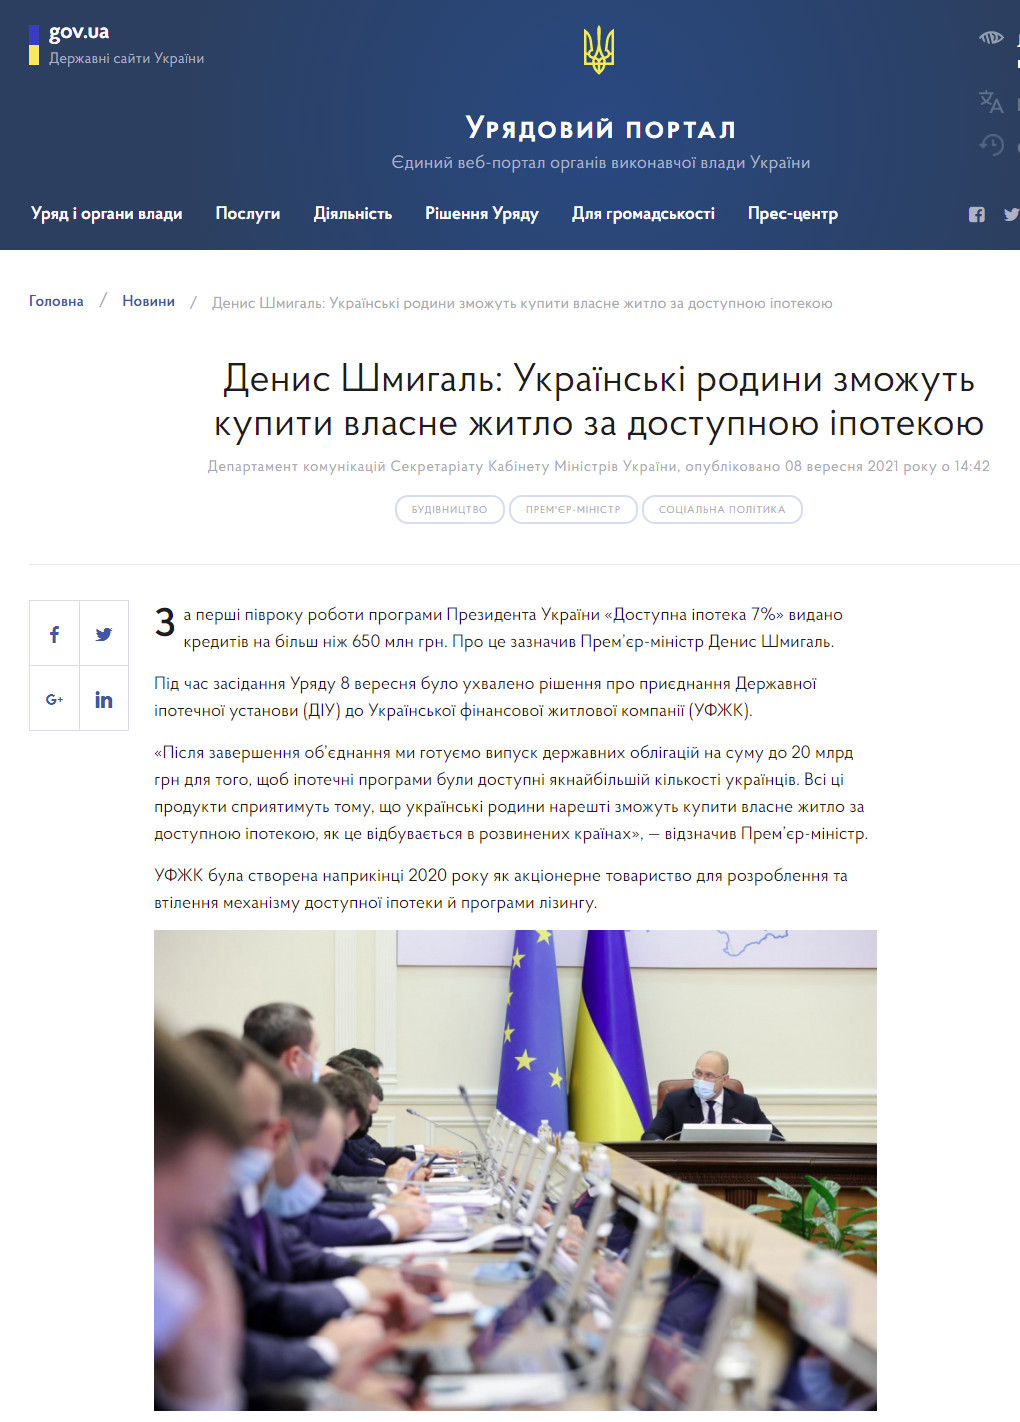 https://www.kmu.gov.ua/news/denis-shmigal-ukrayinski-rodini-zmozhut-kupiti-vlasne-zhitlo-za-dostupnoyu-ipotekoyu